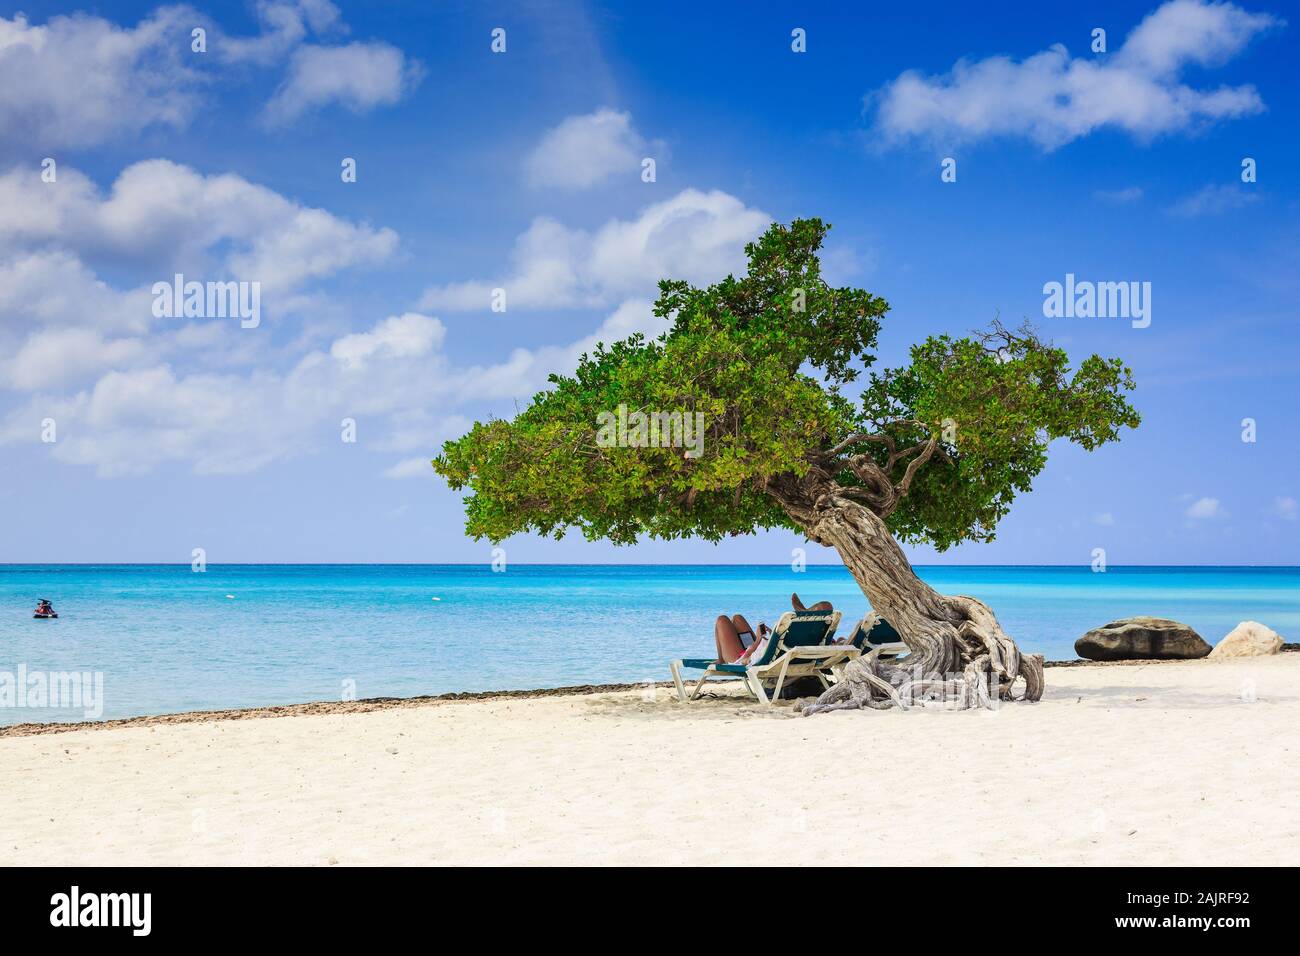 Aruba, Antille olandesi. Divi divi Tree sulla spiaggia. Foto Stock